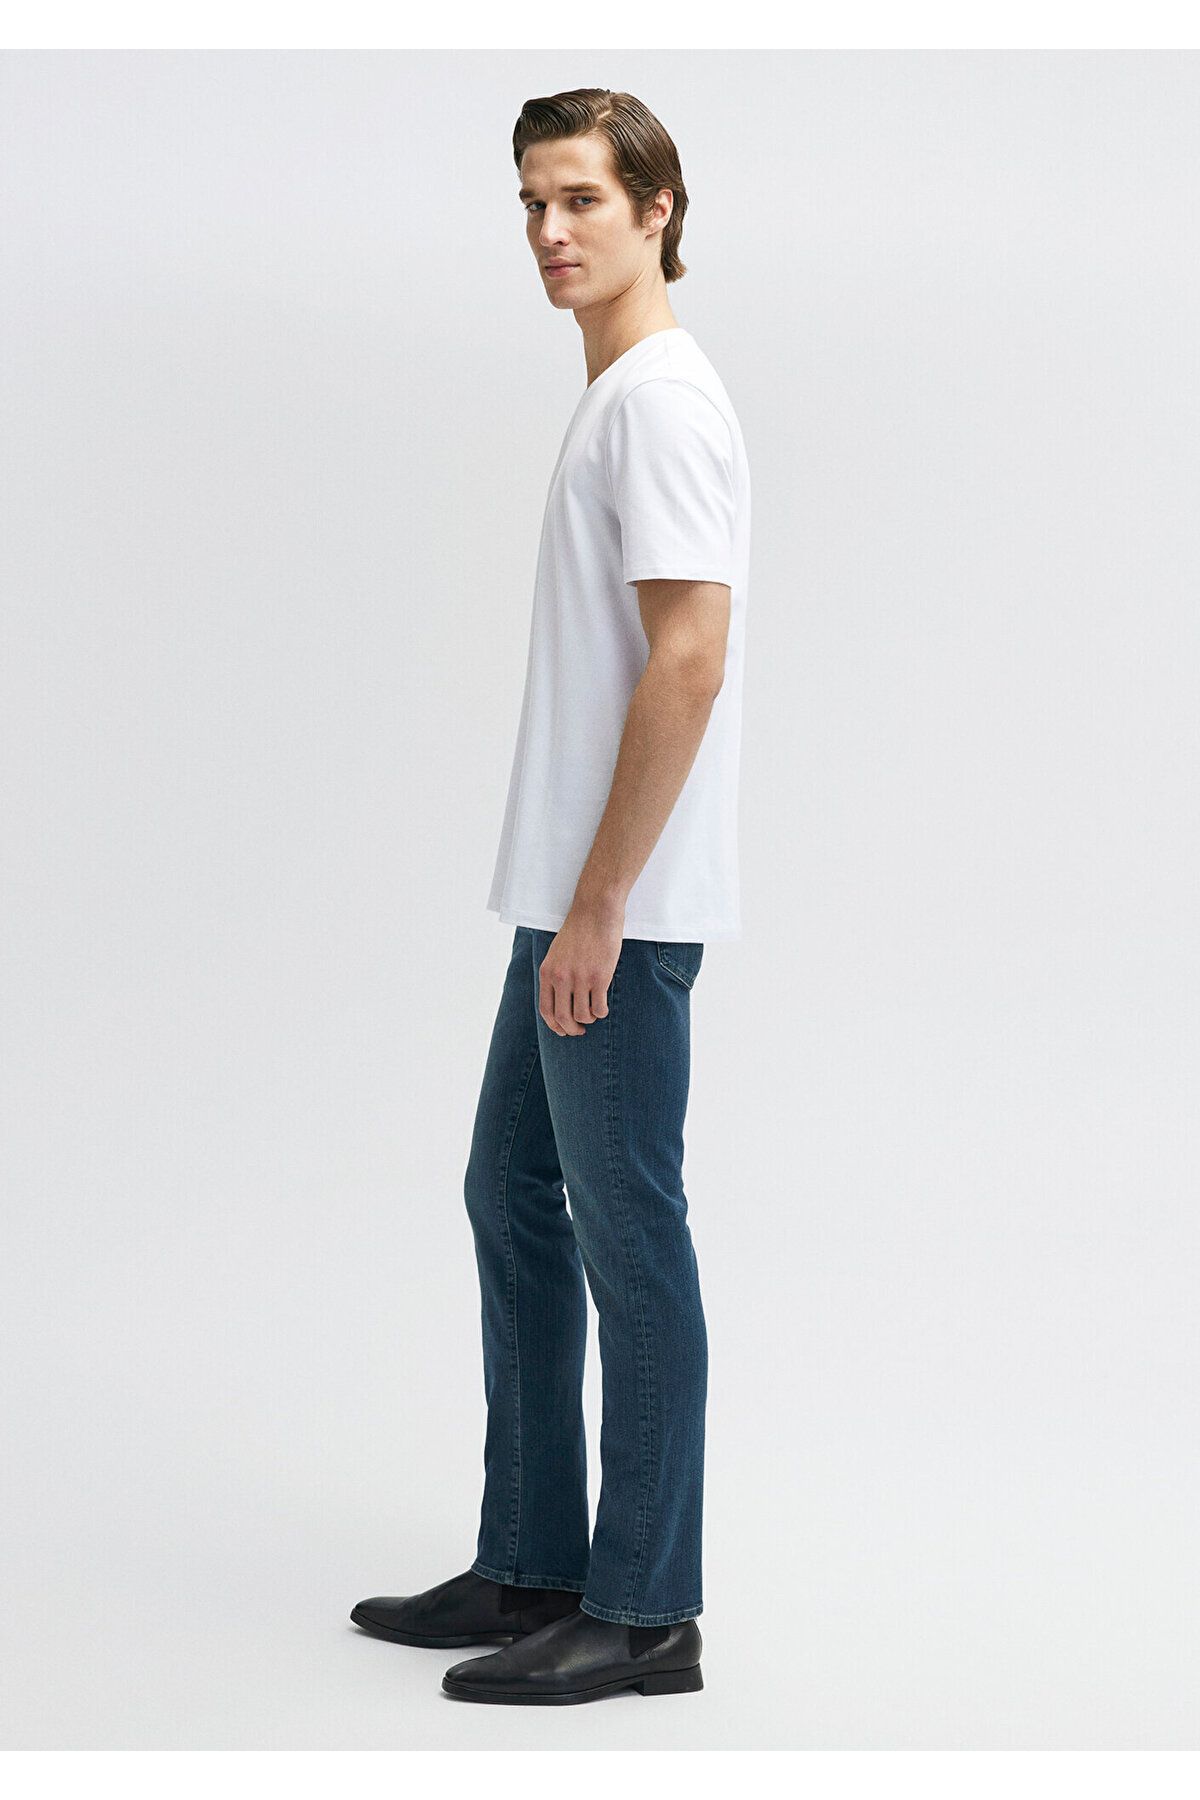 Mavi تی شرت اساسی سفید مناسب / کلاس معمولی 0610252-620